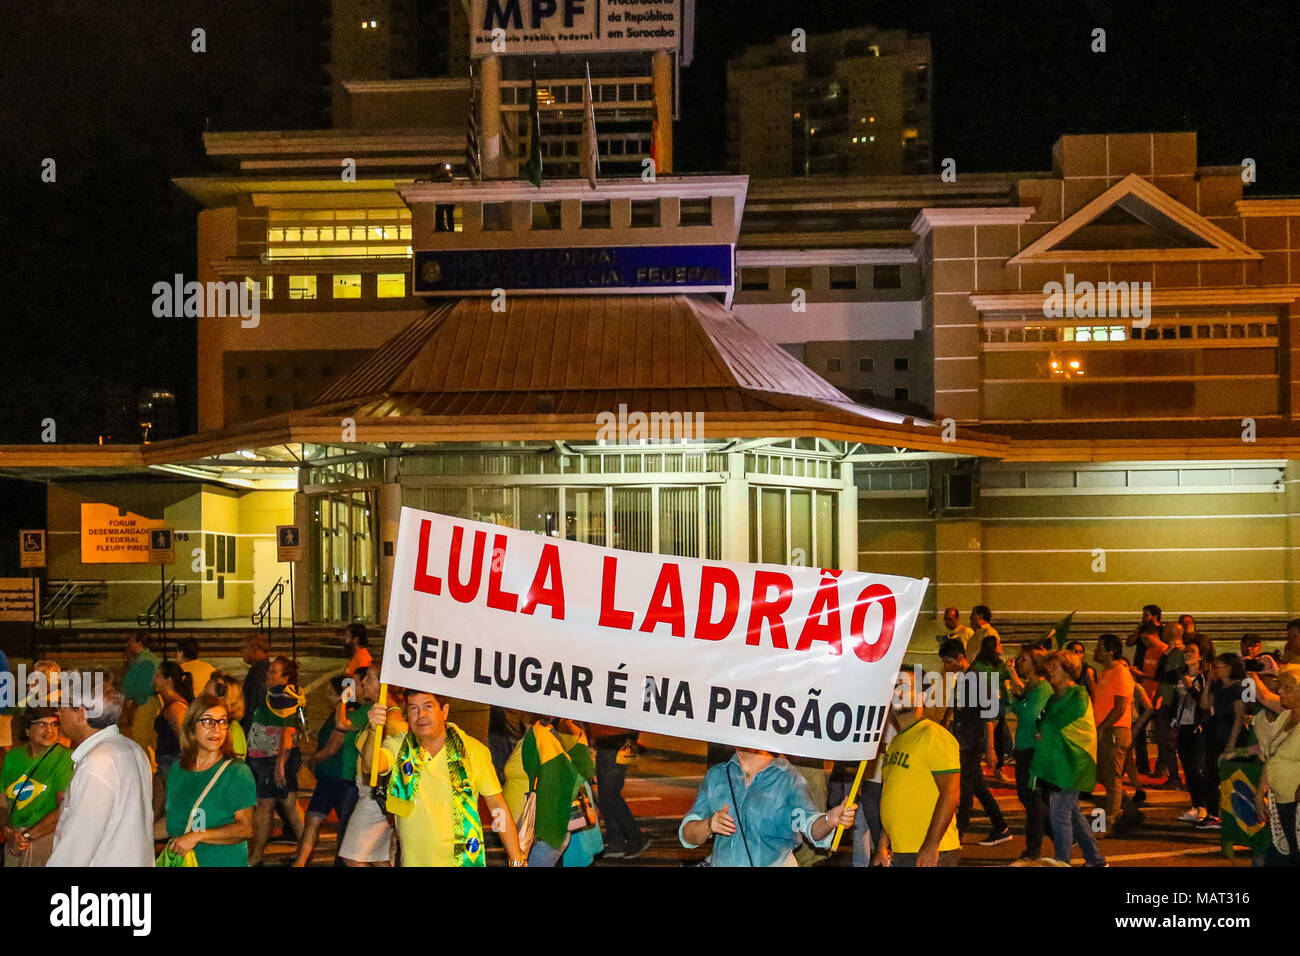 MBL - Movimento Brasil - MBL - Movimento Brasil Livre